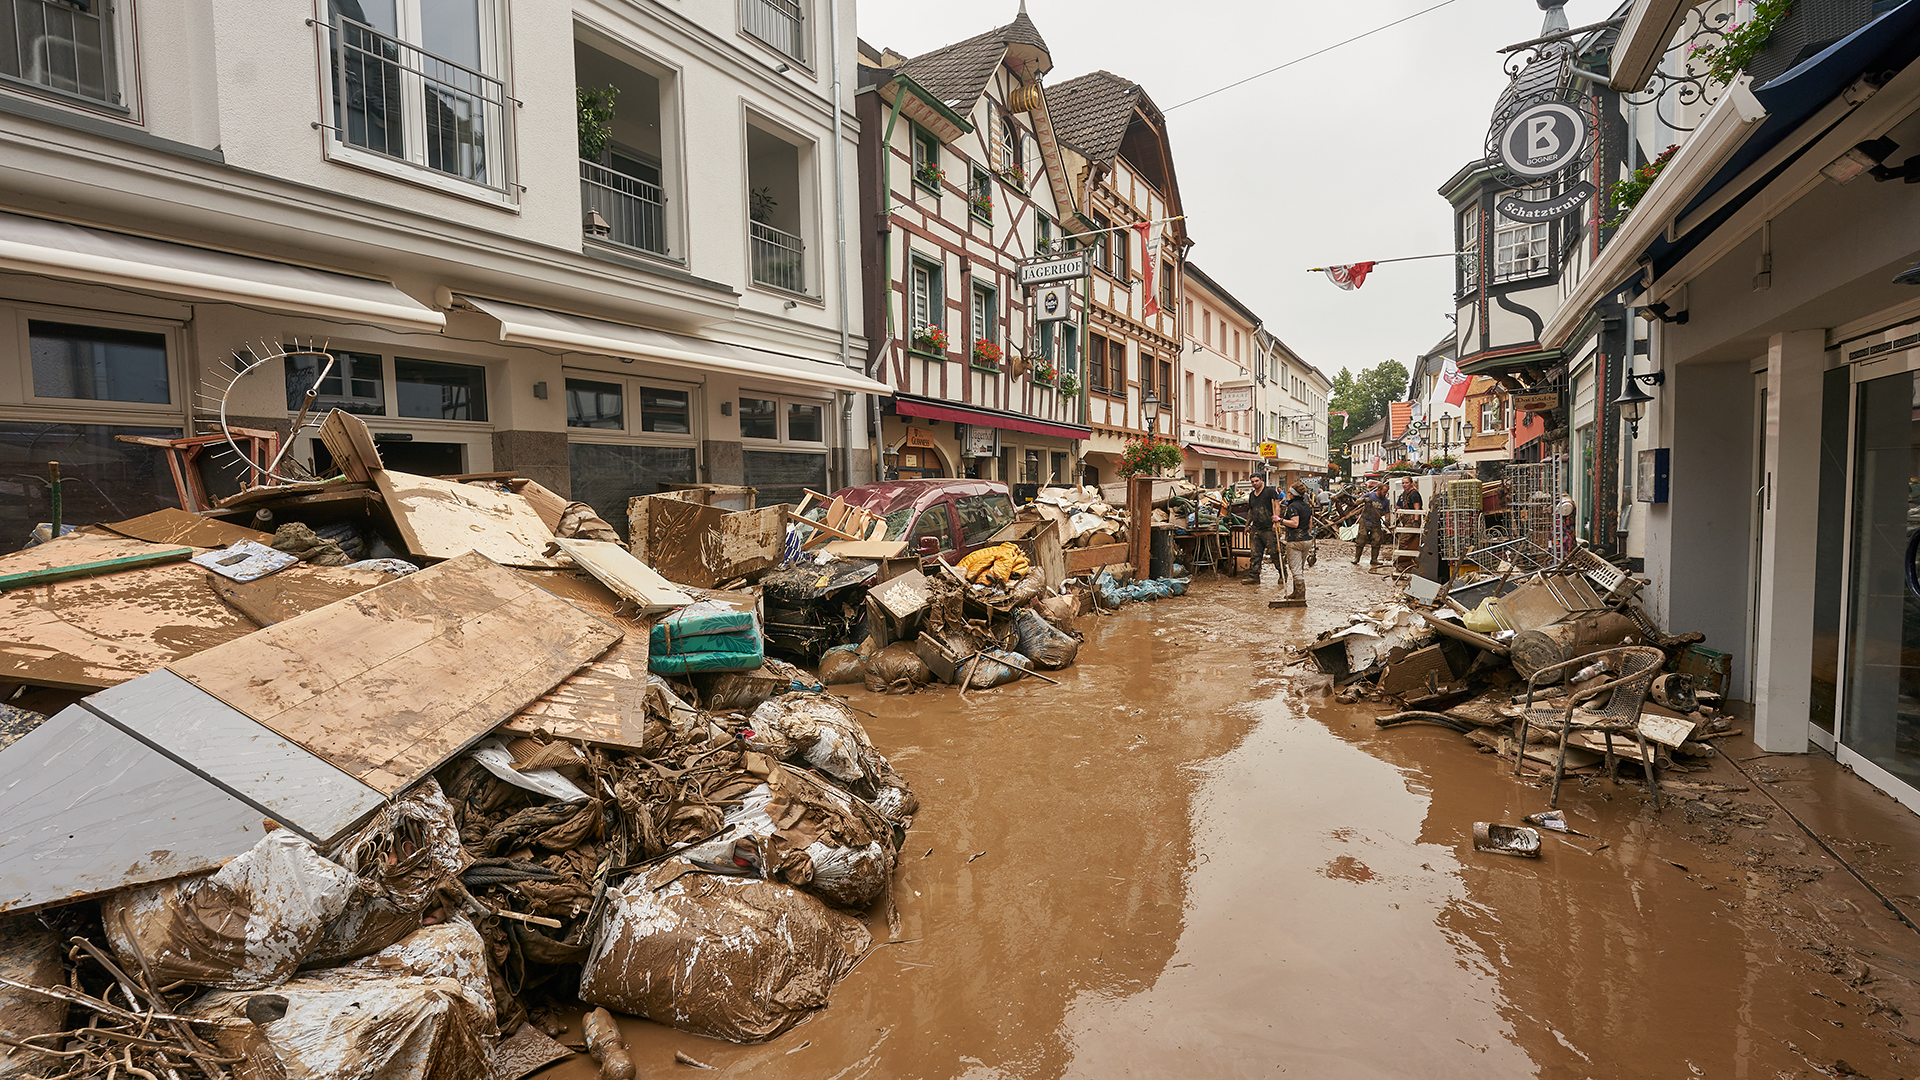 Anwohner und Ladeninhaber in Bad Neuenahr-Ahrweiler befreien ihre Häuser vom Schlamm und bringen unbrauchbares Mobiliar nach draußen. | dpa